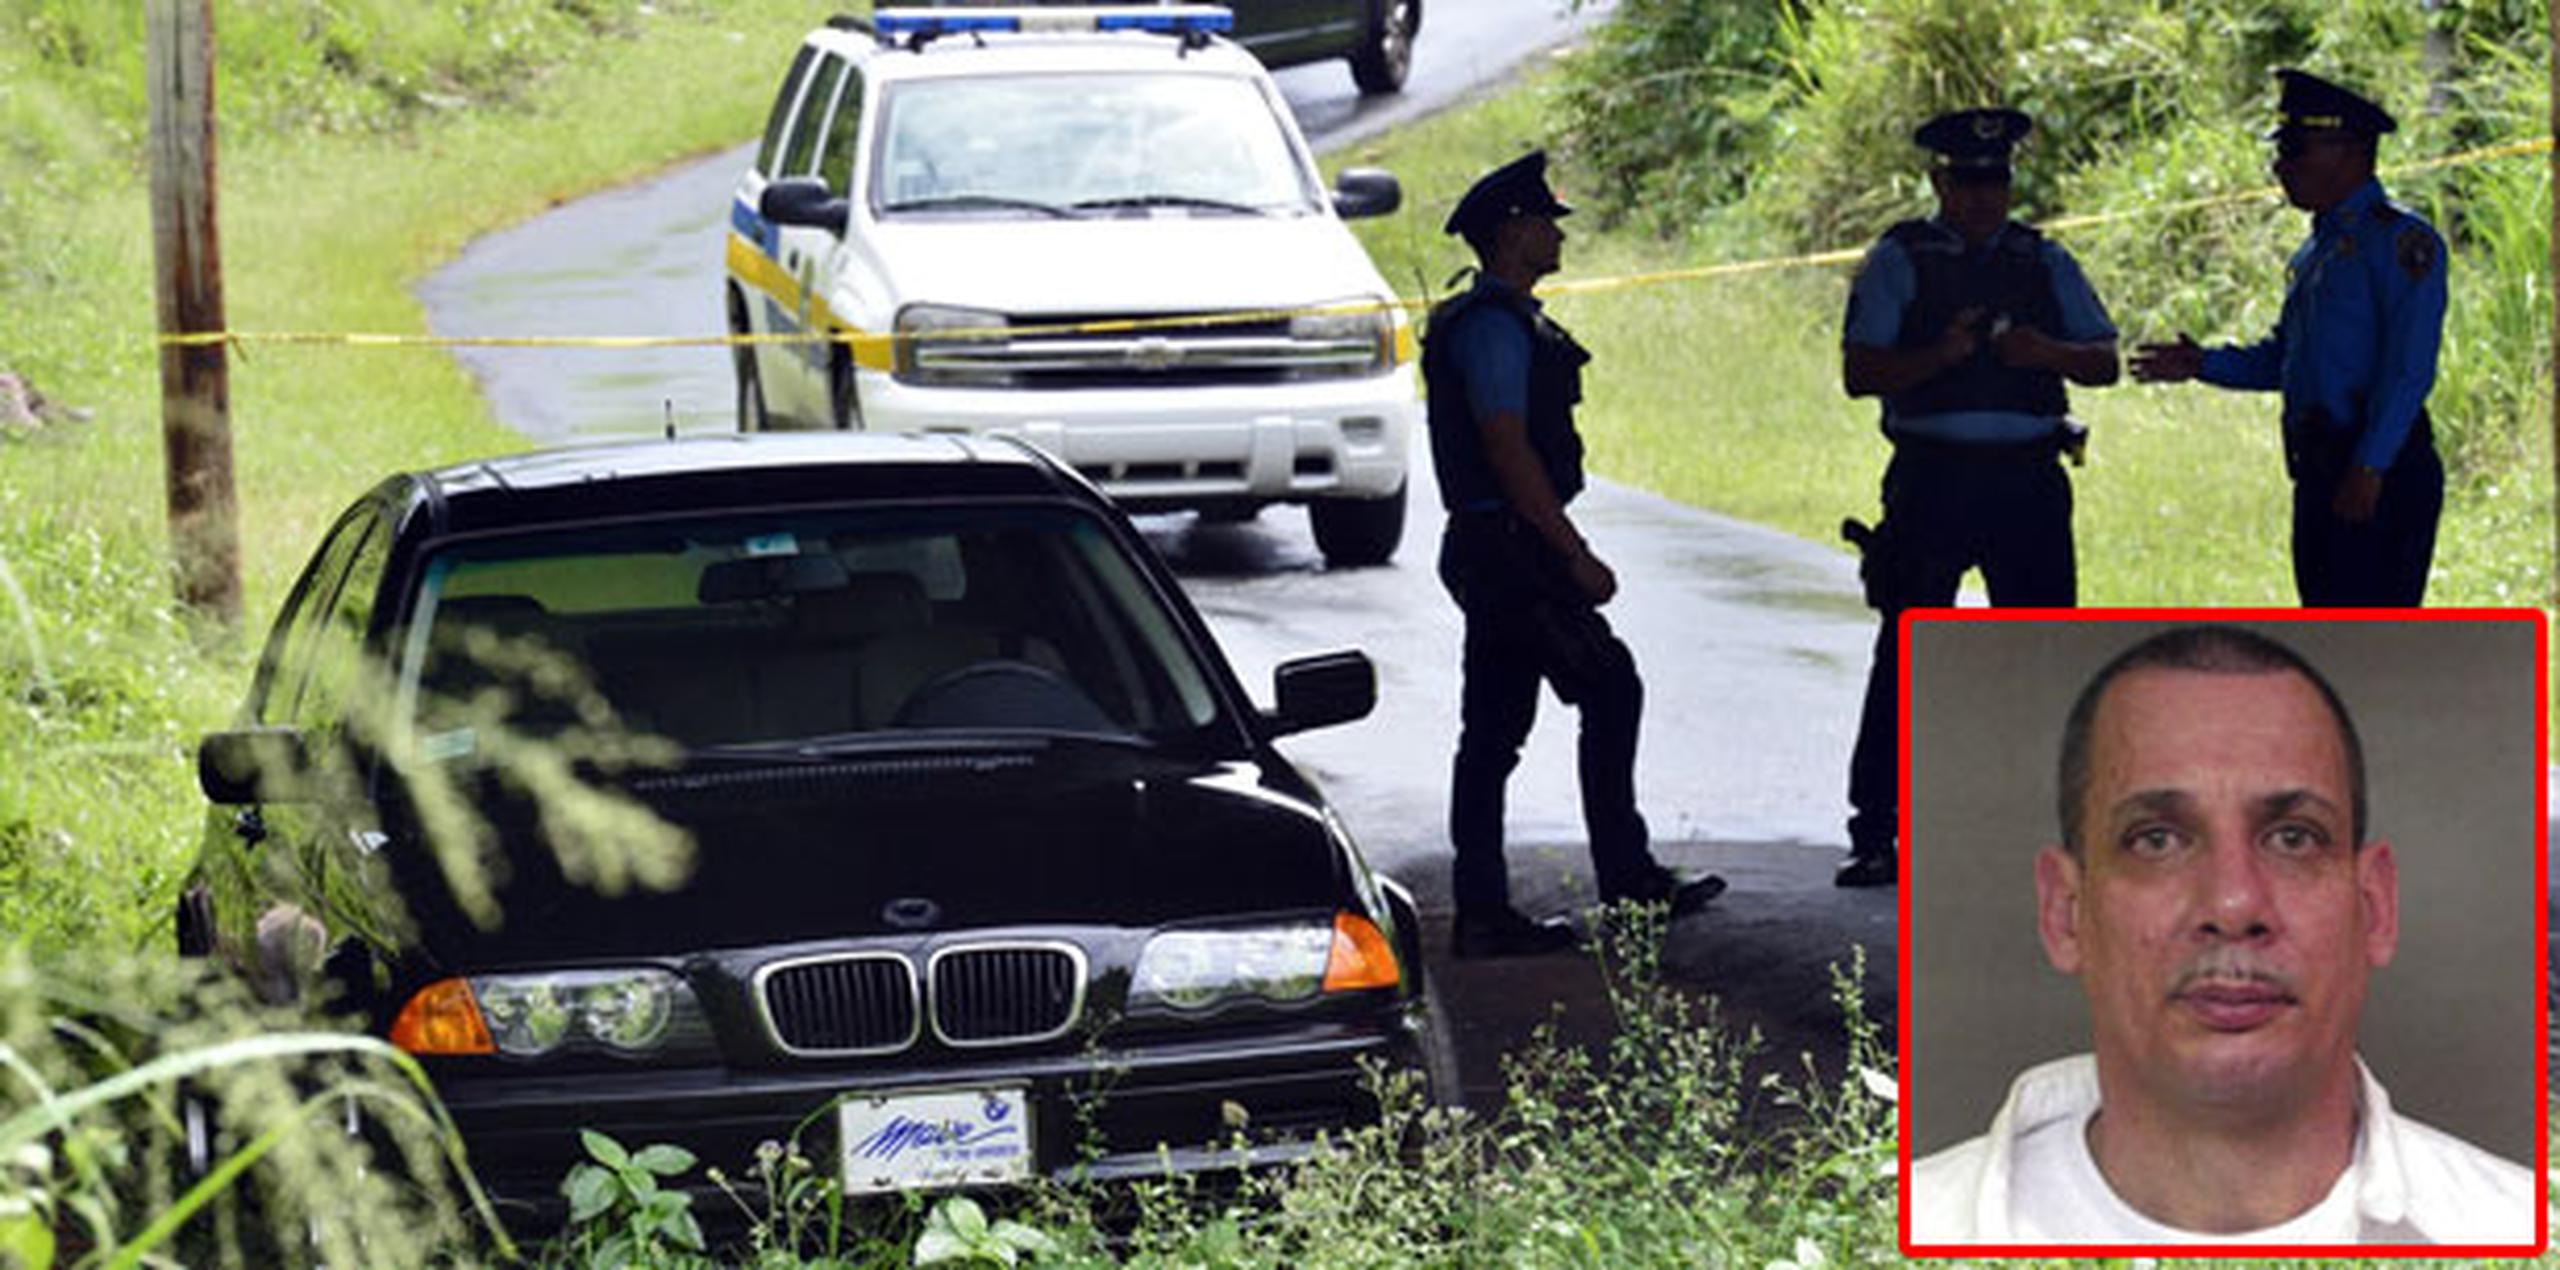 El vehículo que usó Padilla Viera para huir de la escena fue encontrado abandonado en el camino Los Guayabos, sector Morcelo en Caimito. (Archivo)